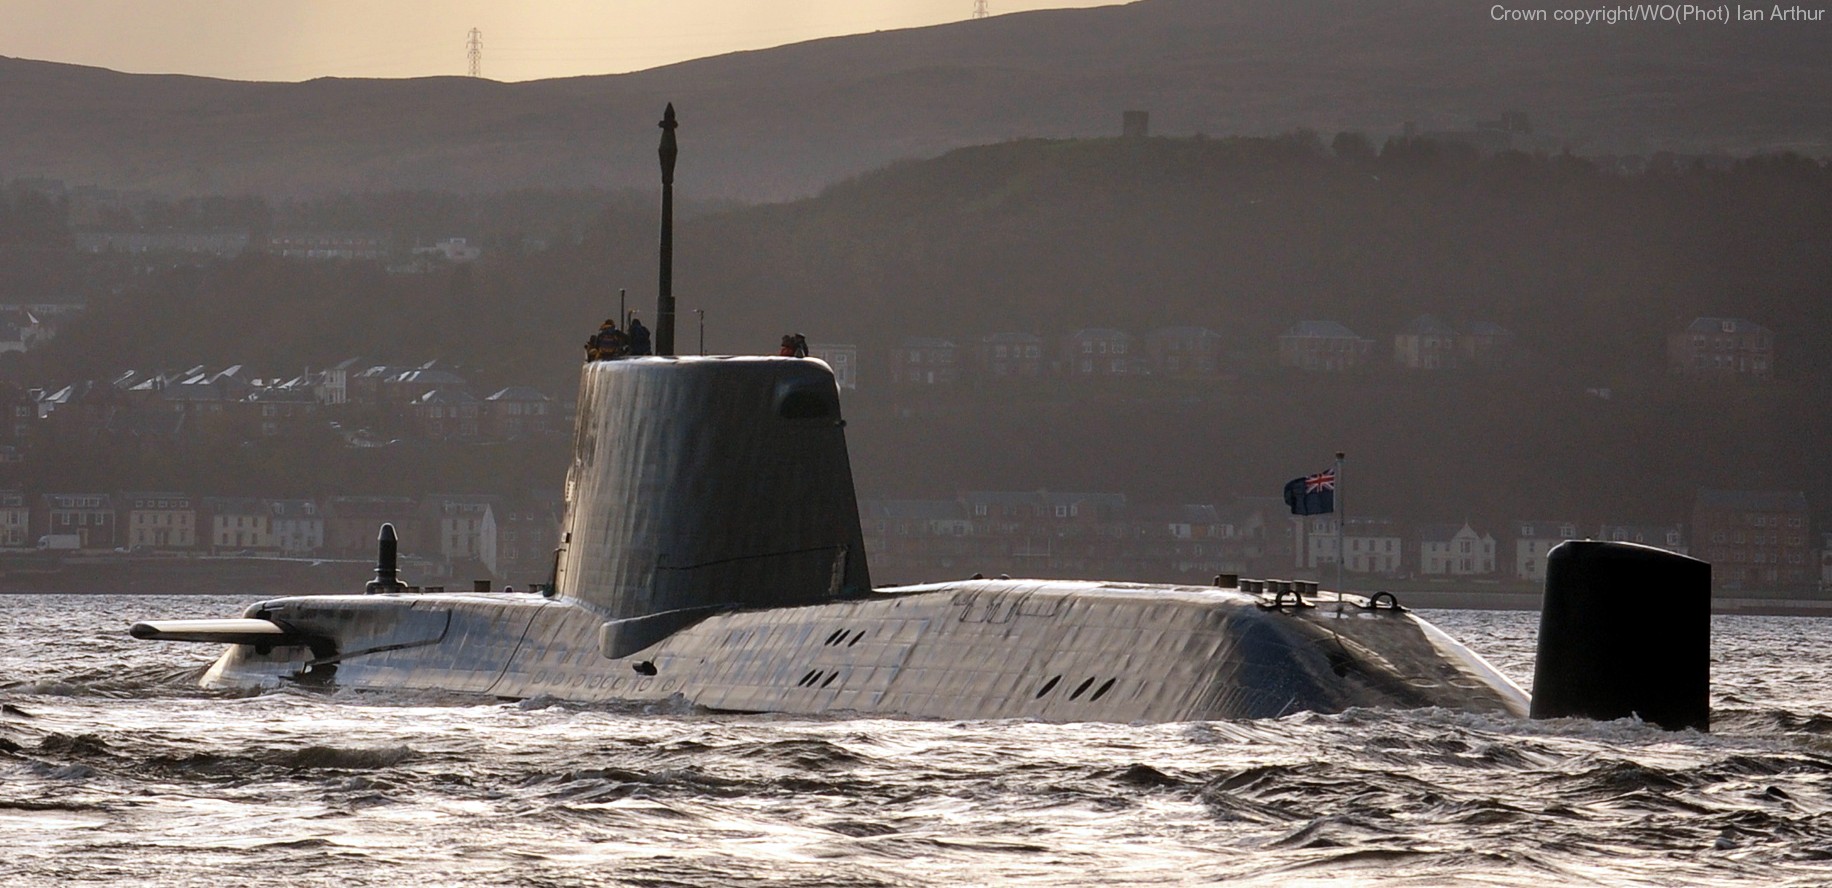 s119 hms astute s-119 attack submarine ssn hunter killer royal navy 08